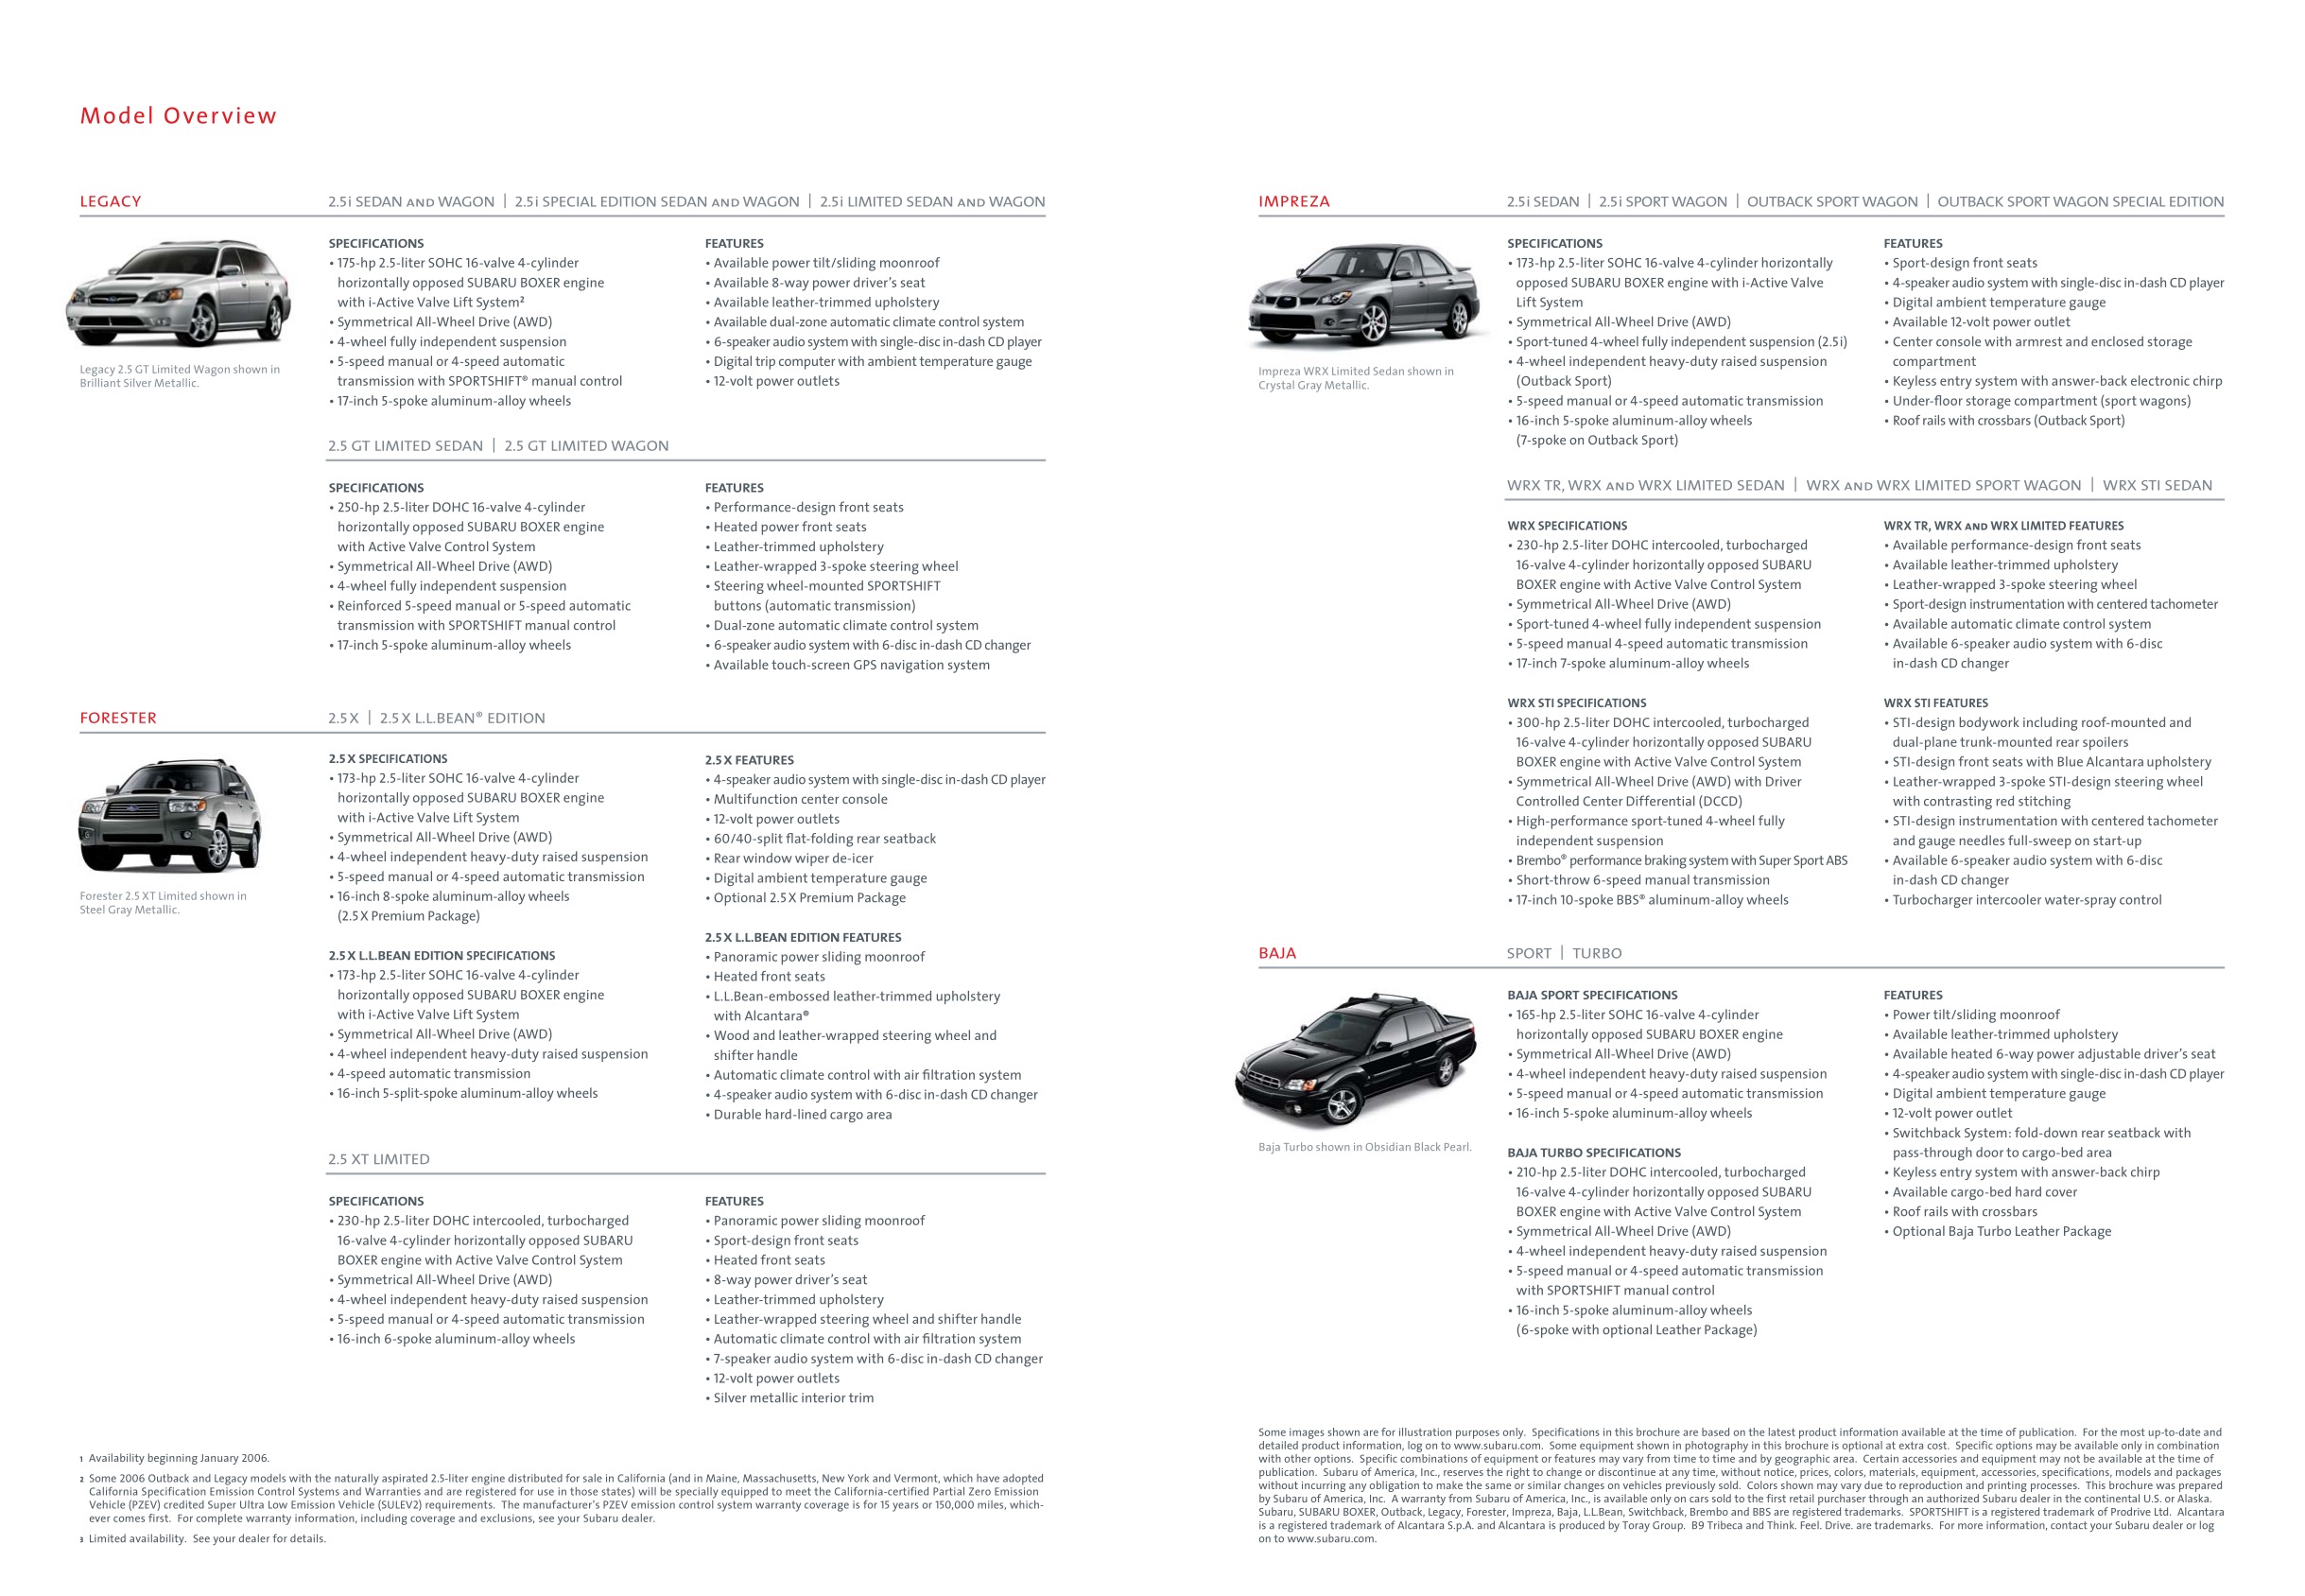 2006 Subaru Brochure Page 3